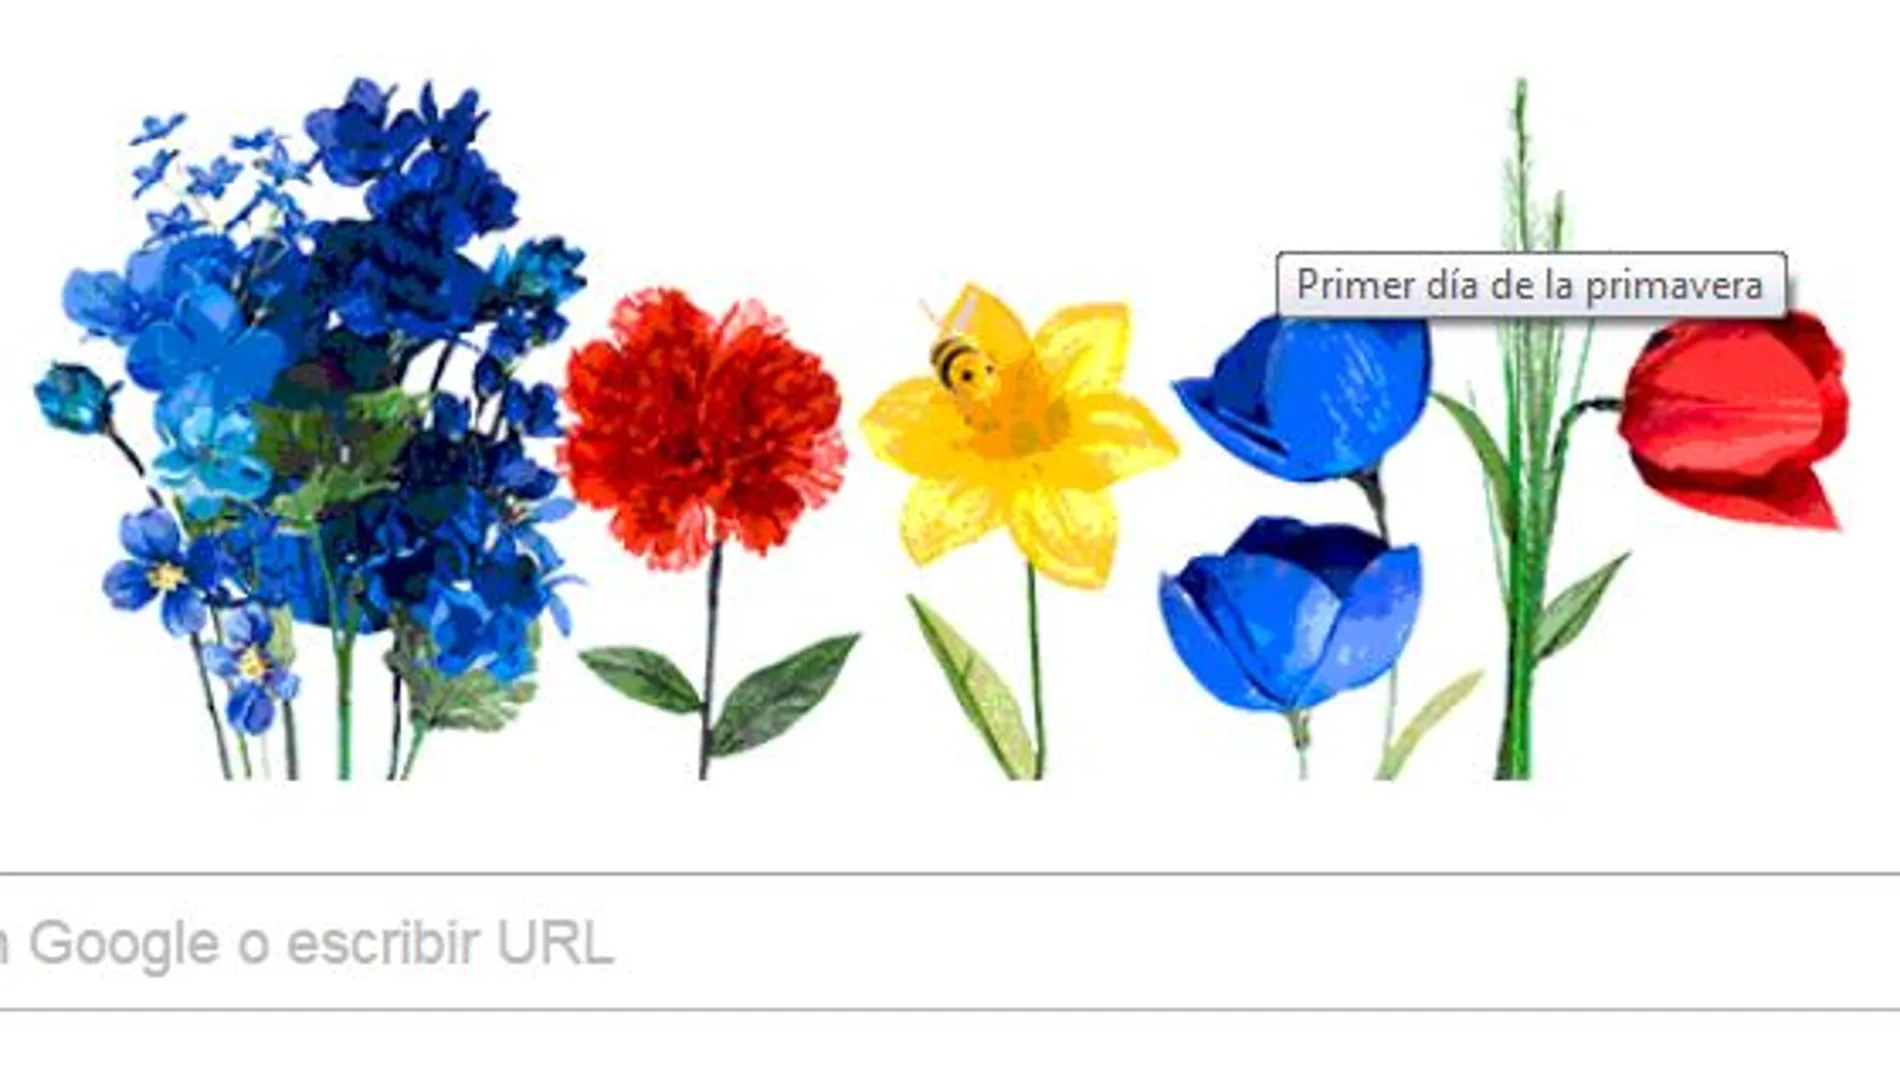 Ya es primavera en Google